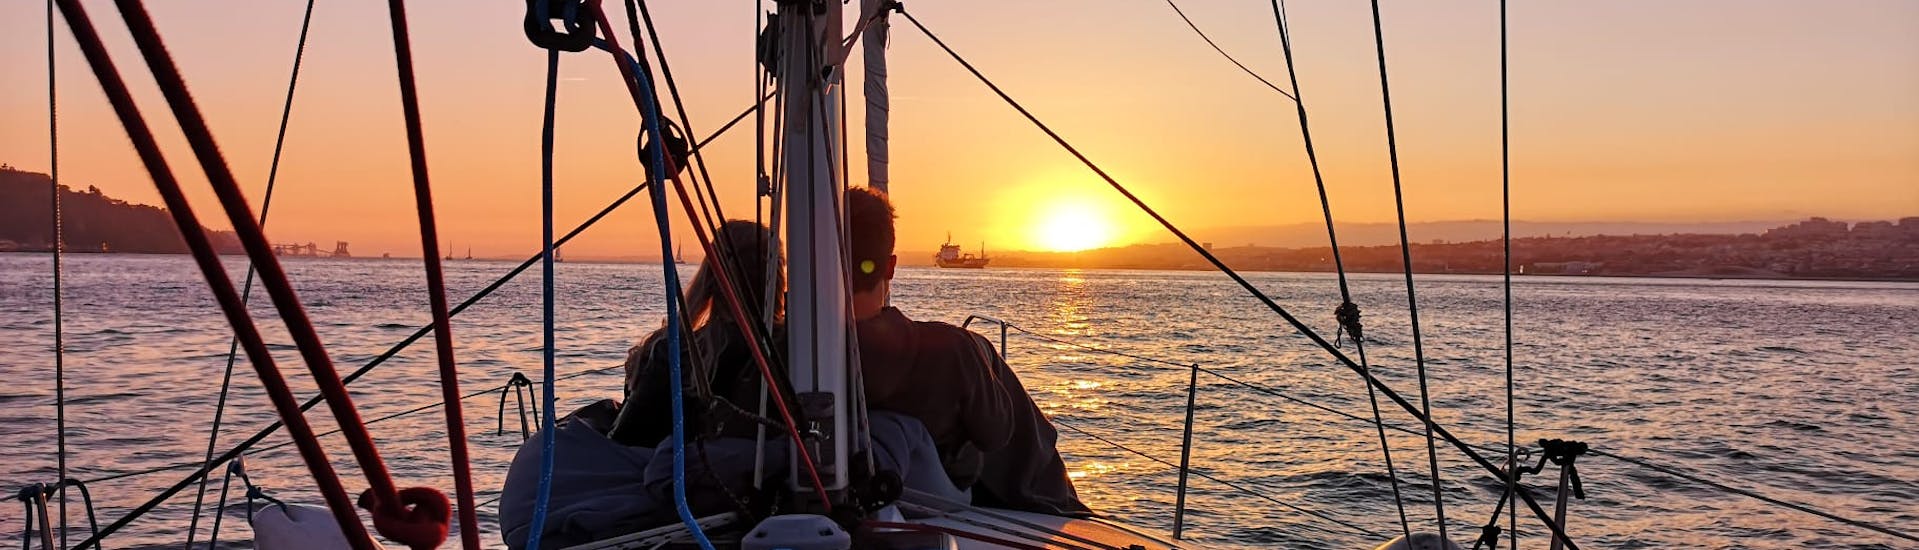 Una pareja disfrutando de la puesta de sol en un barco de Palmayachts Charters Portugal durante la excursión privada en barco al atardecer desde Cascais.